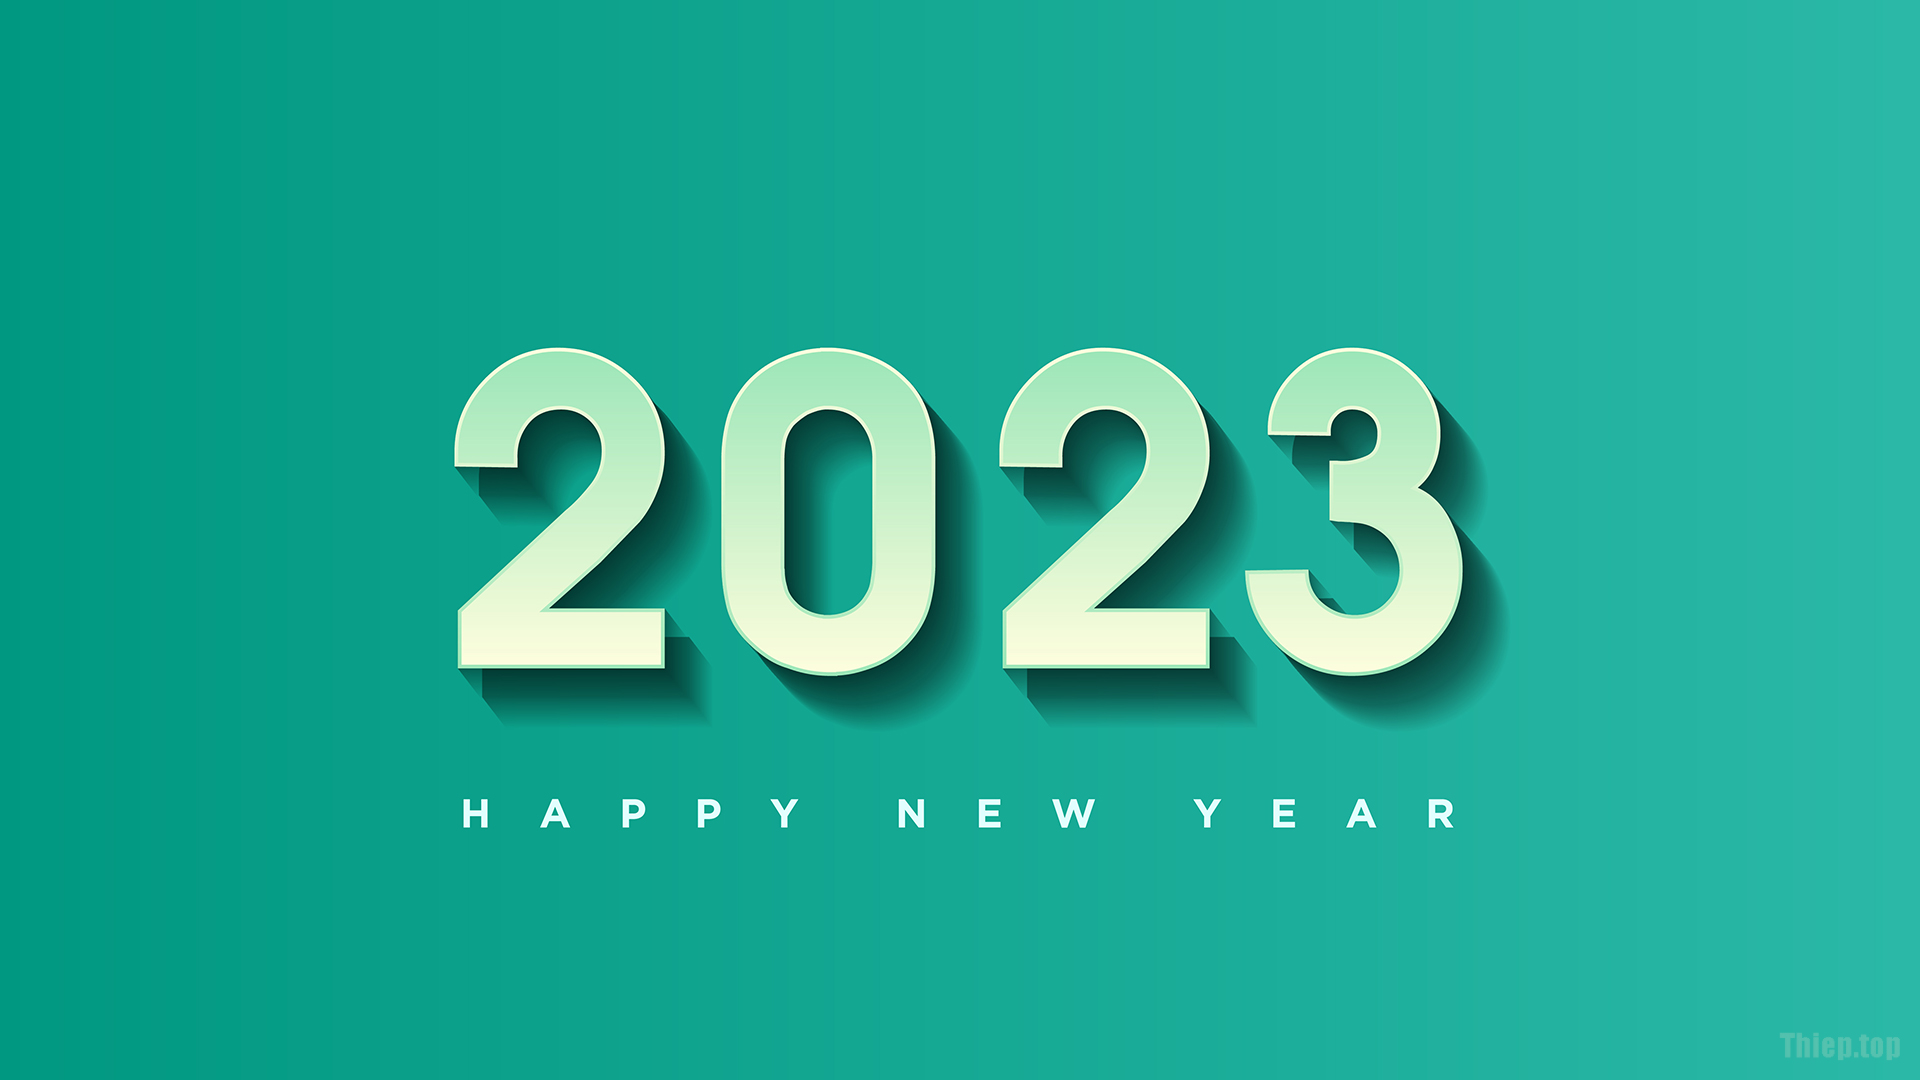 Top Hình nền chúc mừng năm mới 2023 Full HD Tải miễn phí - Hình 7